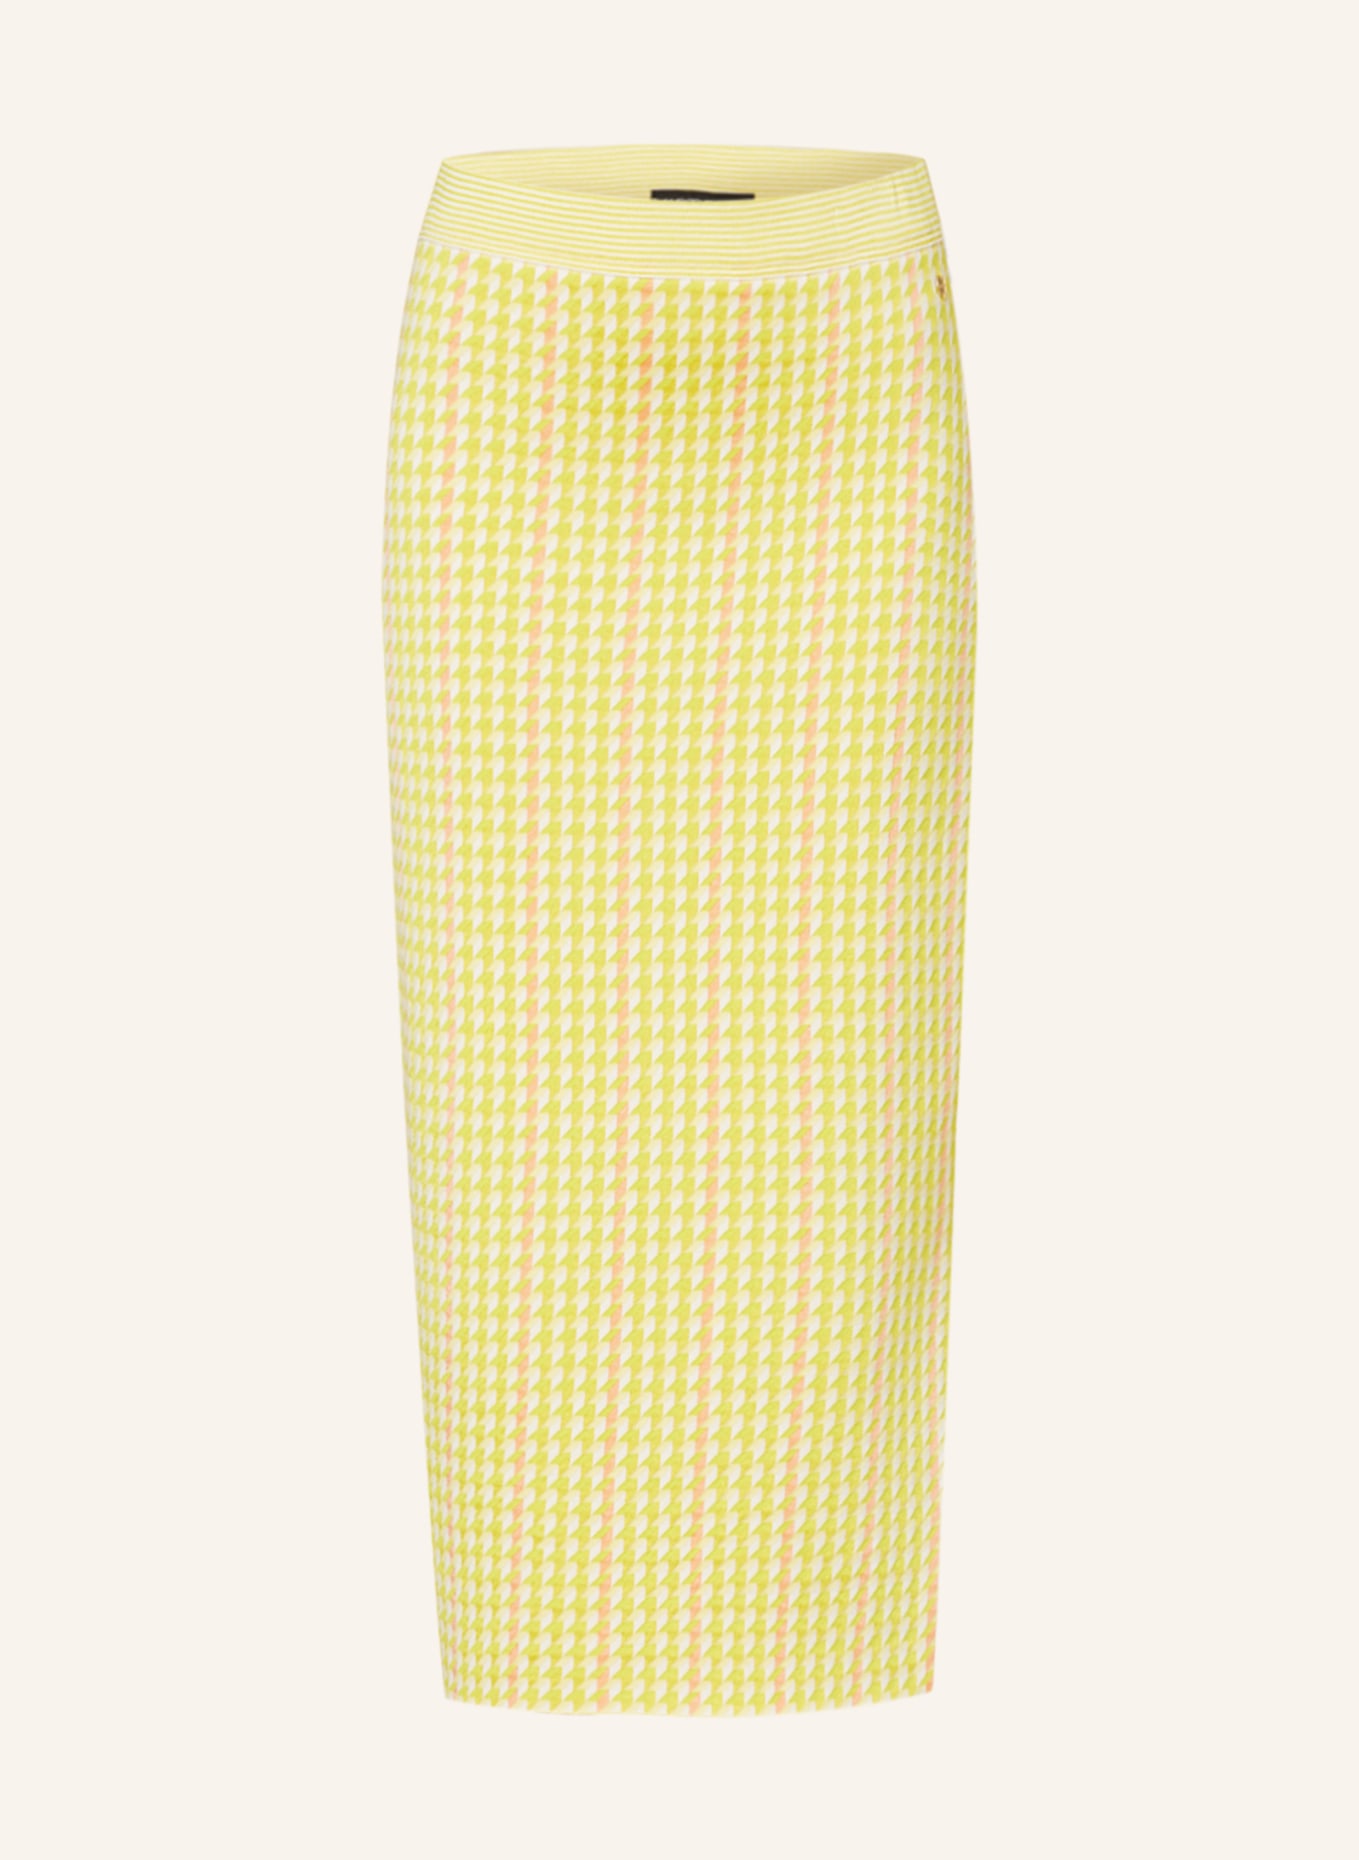 MARC CAIN Knit skirt, Color: 420 pale lemon (Image 1)